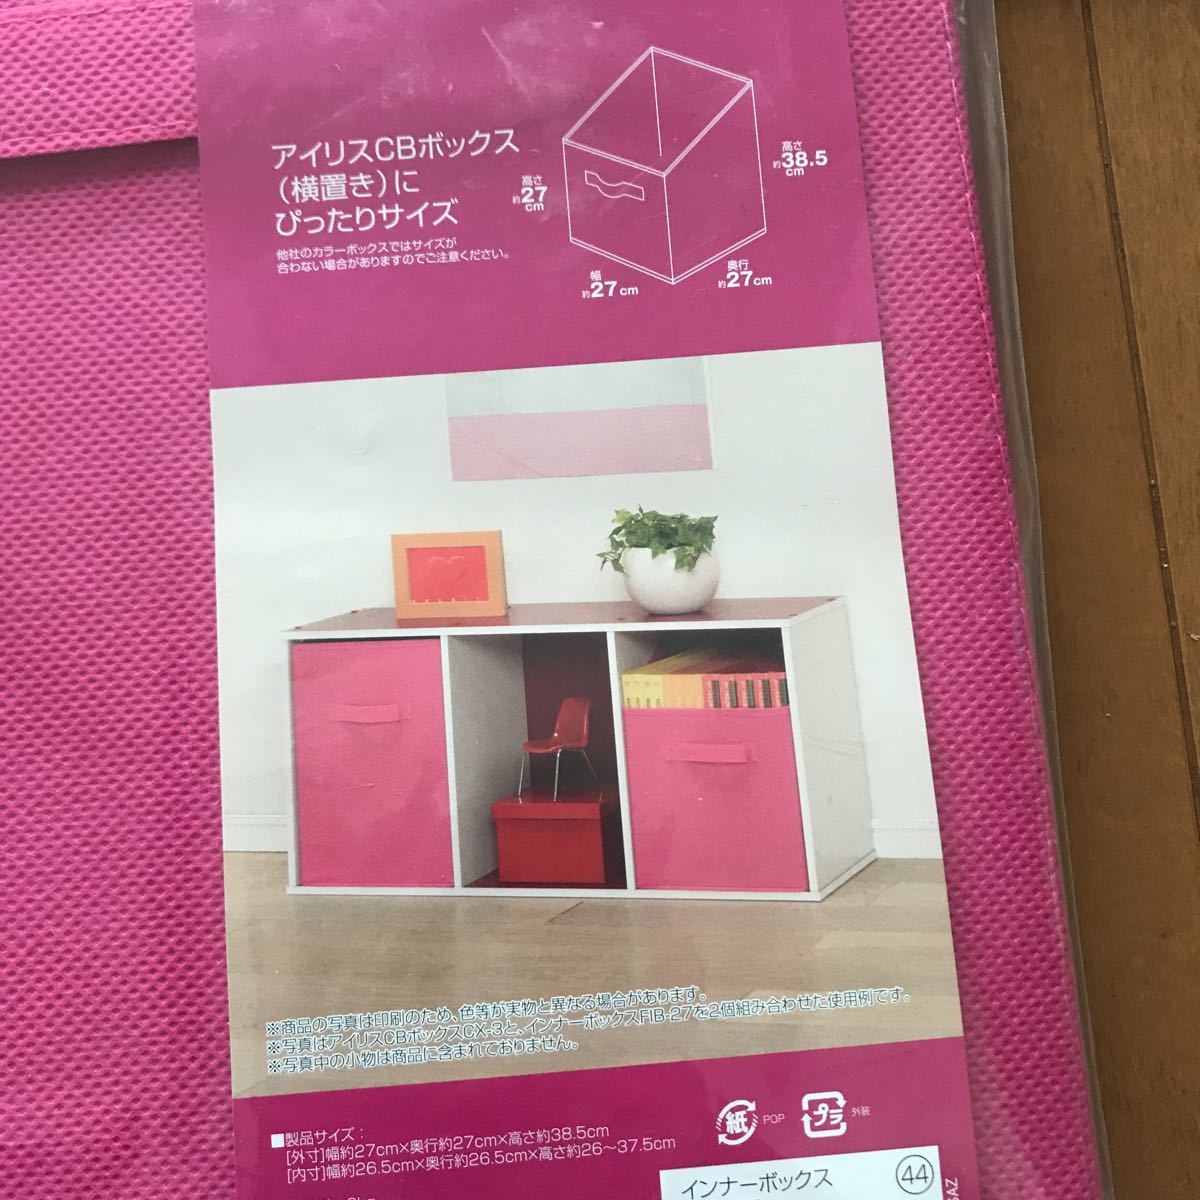 a29 новый товар не использовался товар Iris o-yamaIRISOHYAMA FIB-27 розовый CB box специальный внутренний box скатерть место хранения box комплект 